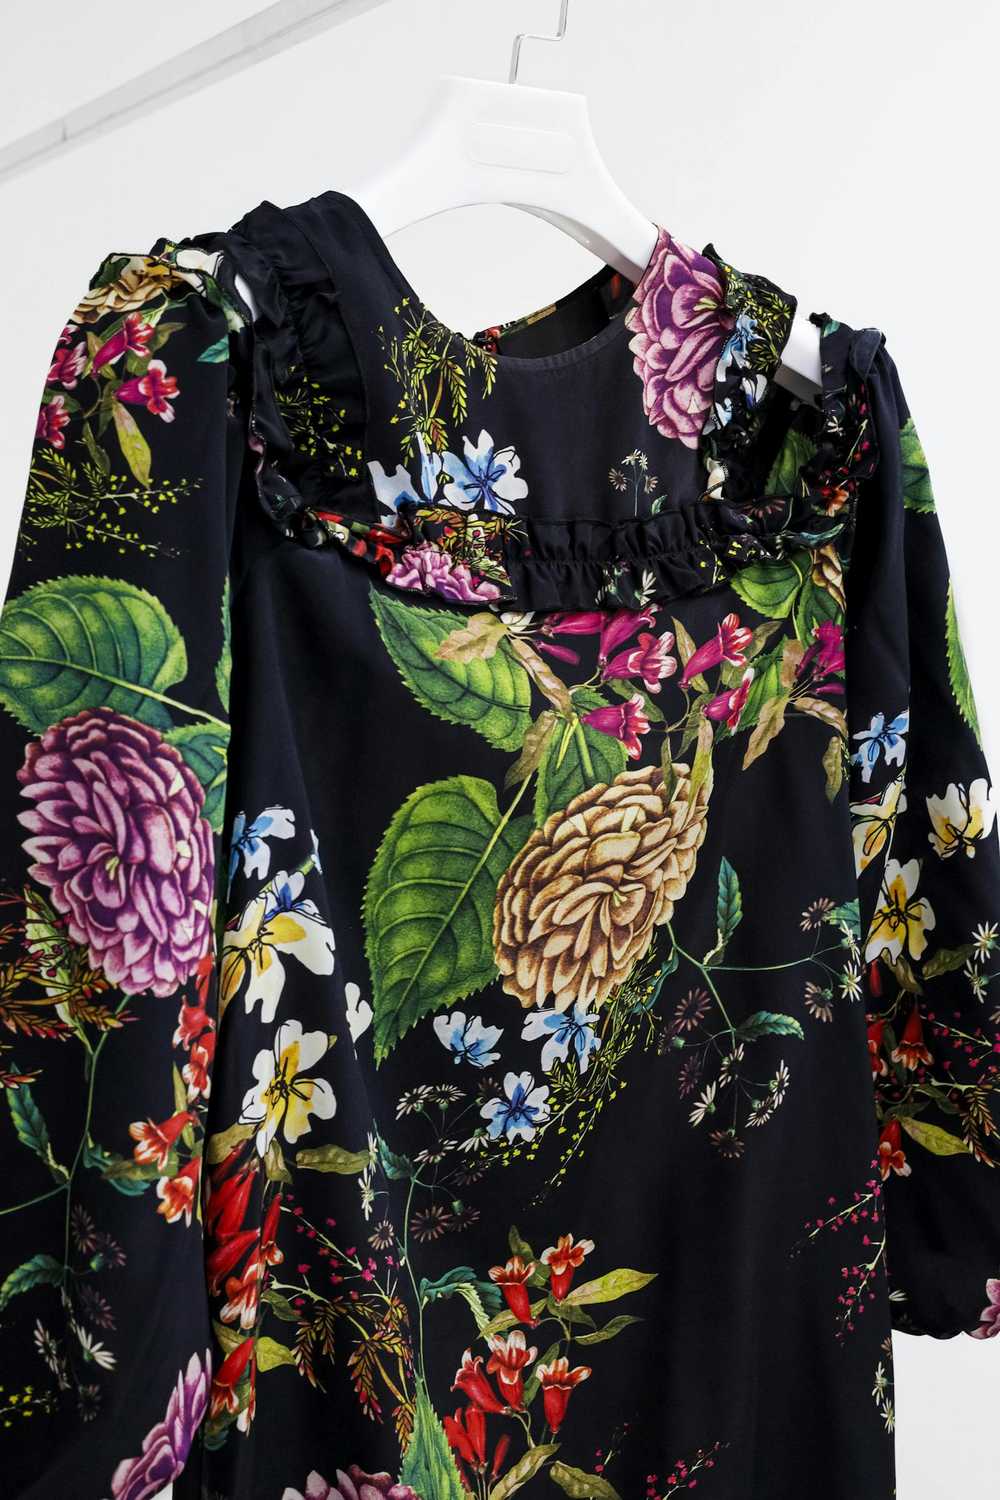 Designer Nicholas Dahlia Floral Ruffle Dress - image 3